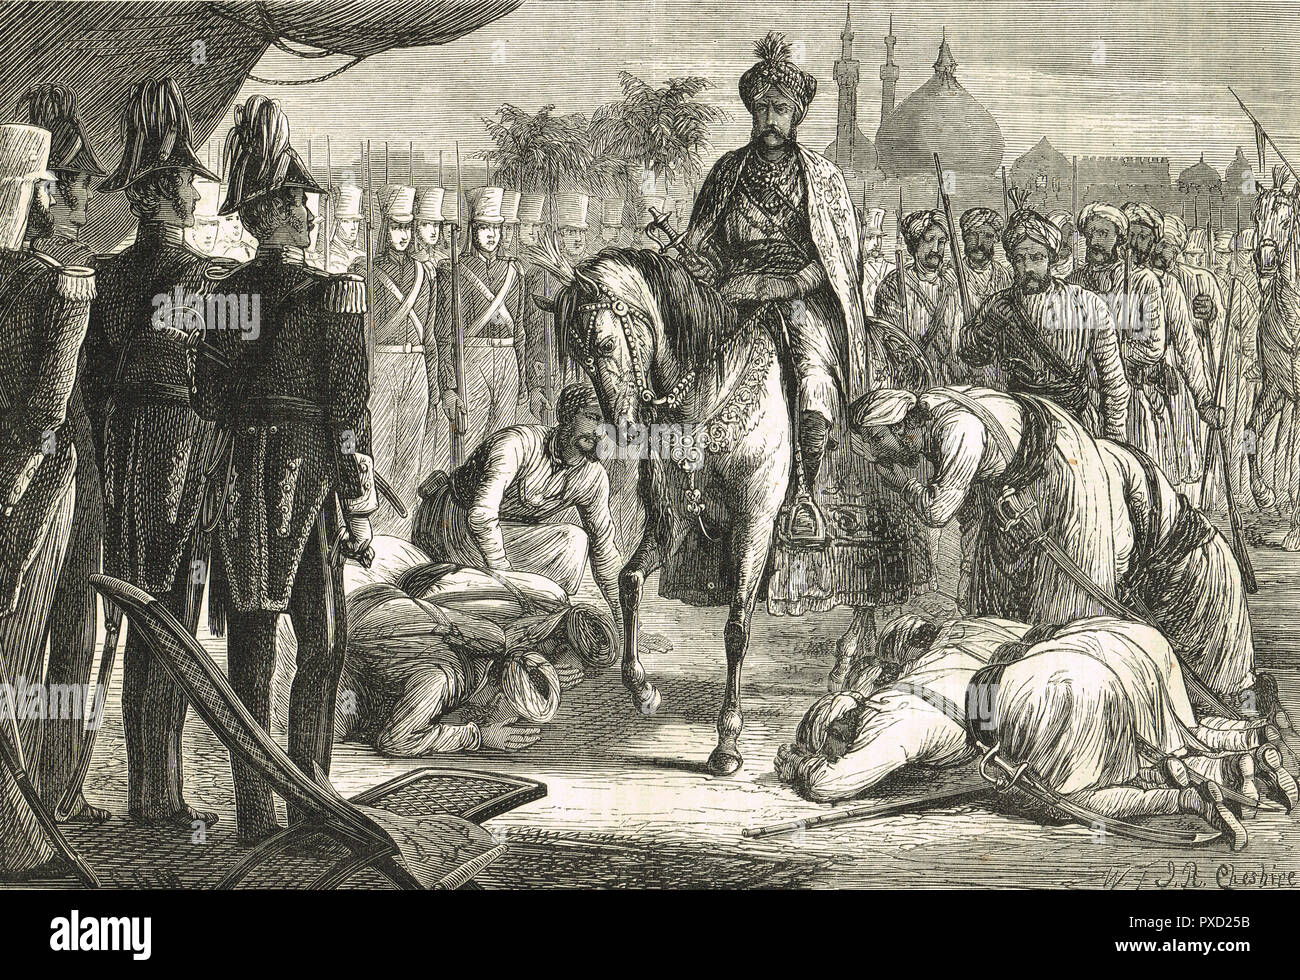 La entrega de Diwan Mulraj Sikh, líder de la rebelión contra los británicos, en el asedio de Multan, 22 de enero de 1849, India Foto de stock